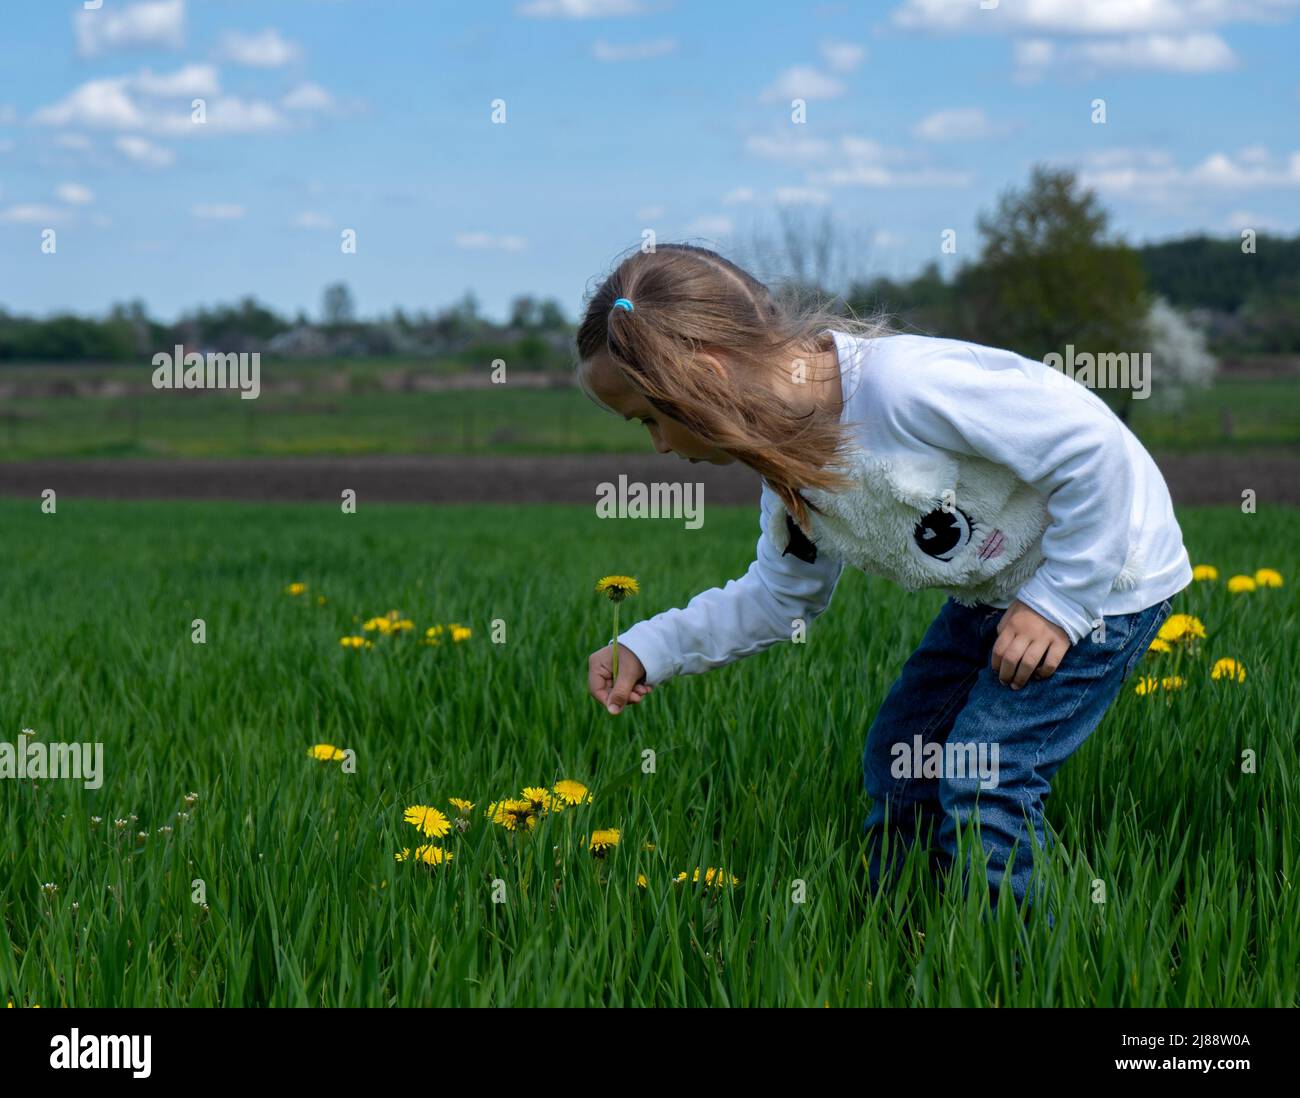 Nettes kleines Mädchen pflücken gelbe Blumen auf einem grünen Feld an sonnigen Tag Stockfoto